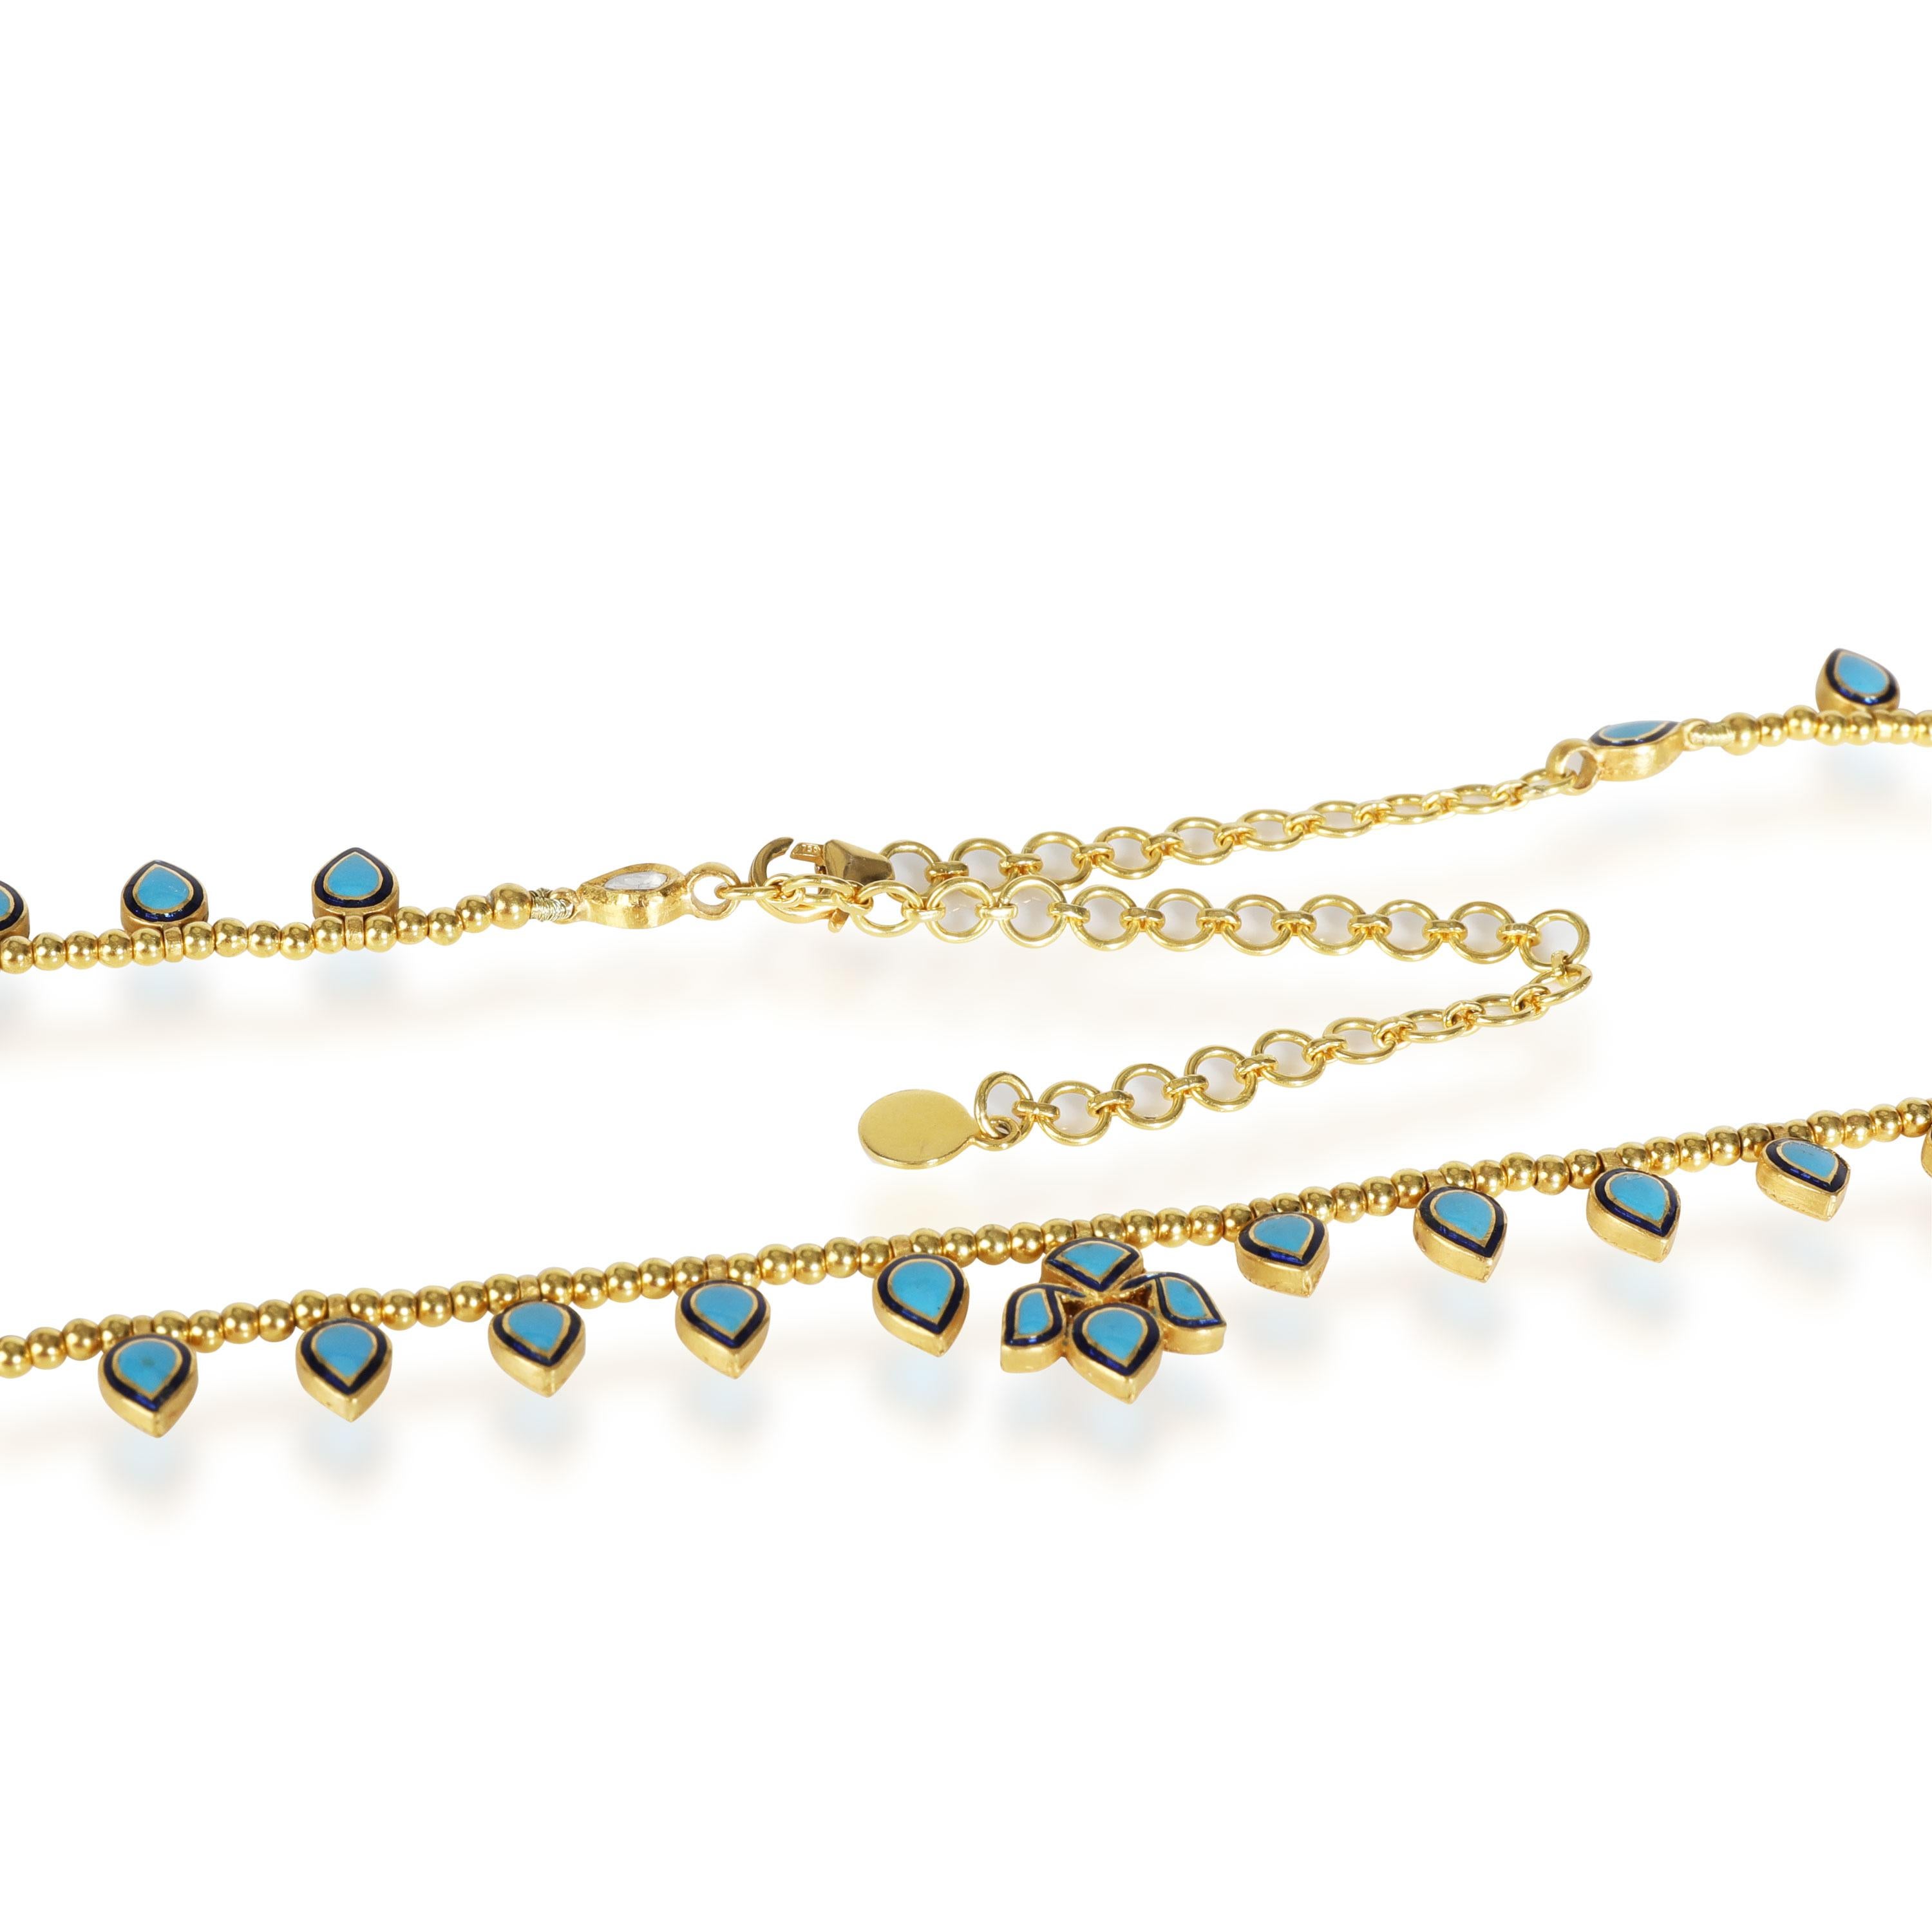 Women's Kundan Diamond Slice Teardrop & Enamel Necklace in 18K Yellow Gold '3.31 ctw'